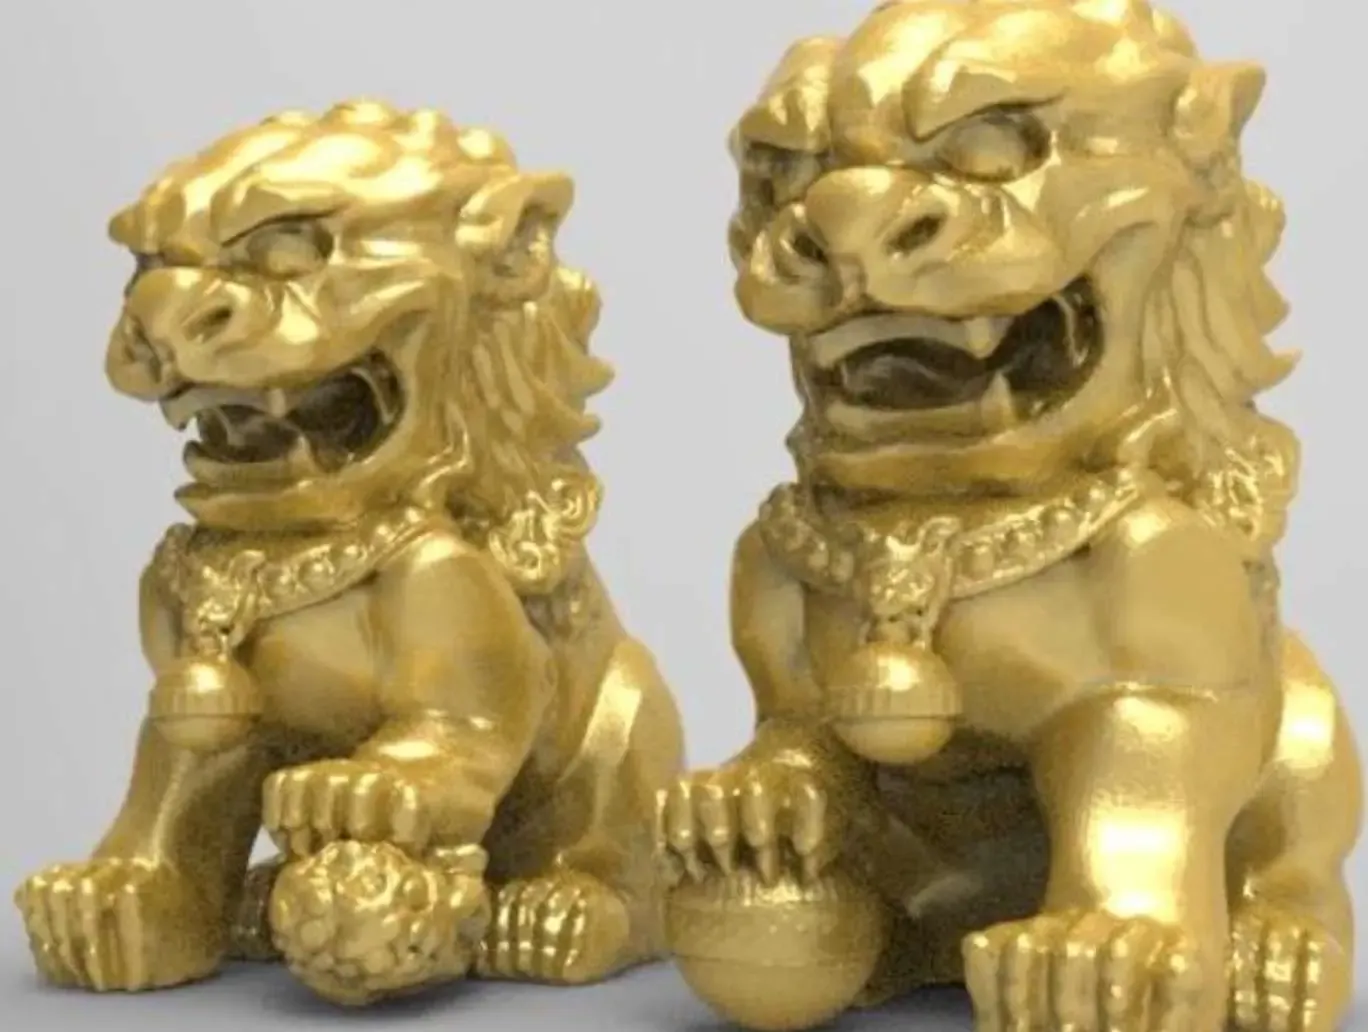 Chinese guardian lions #YearoftheTiger